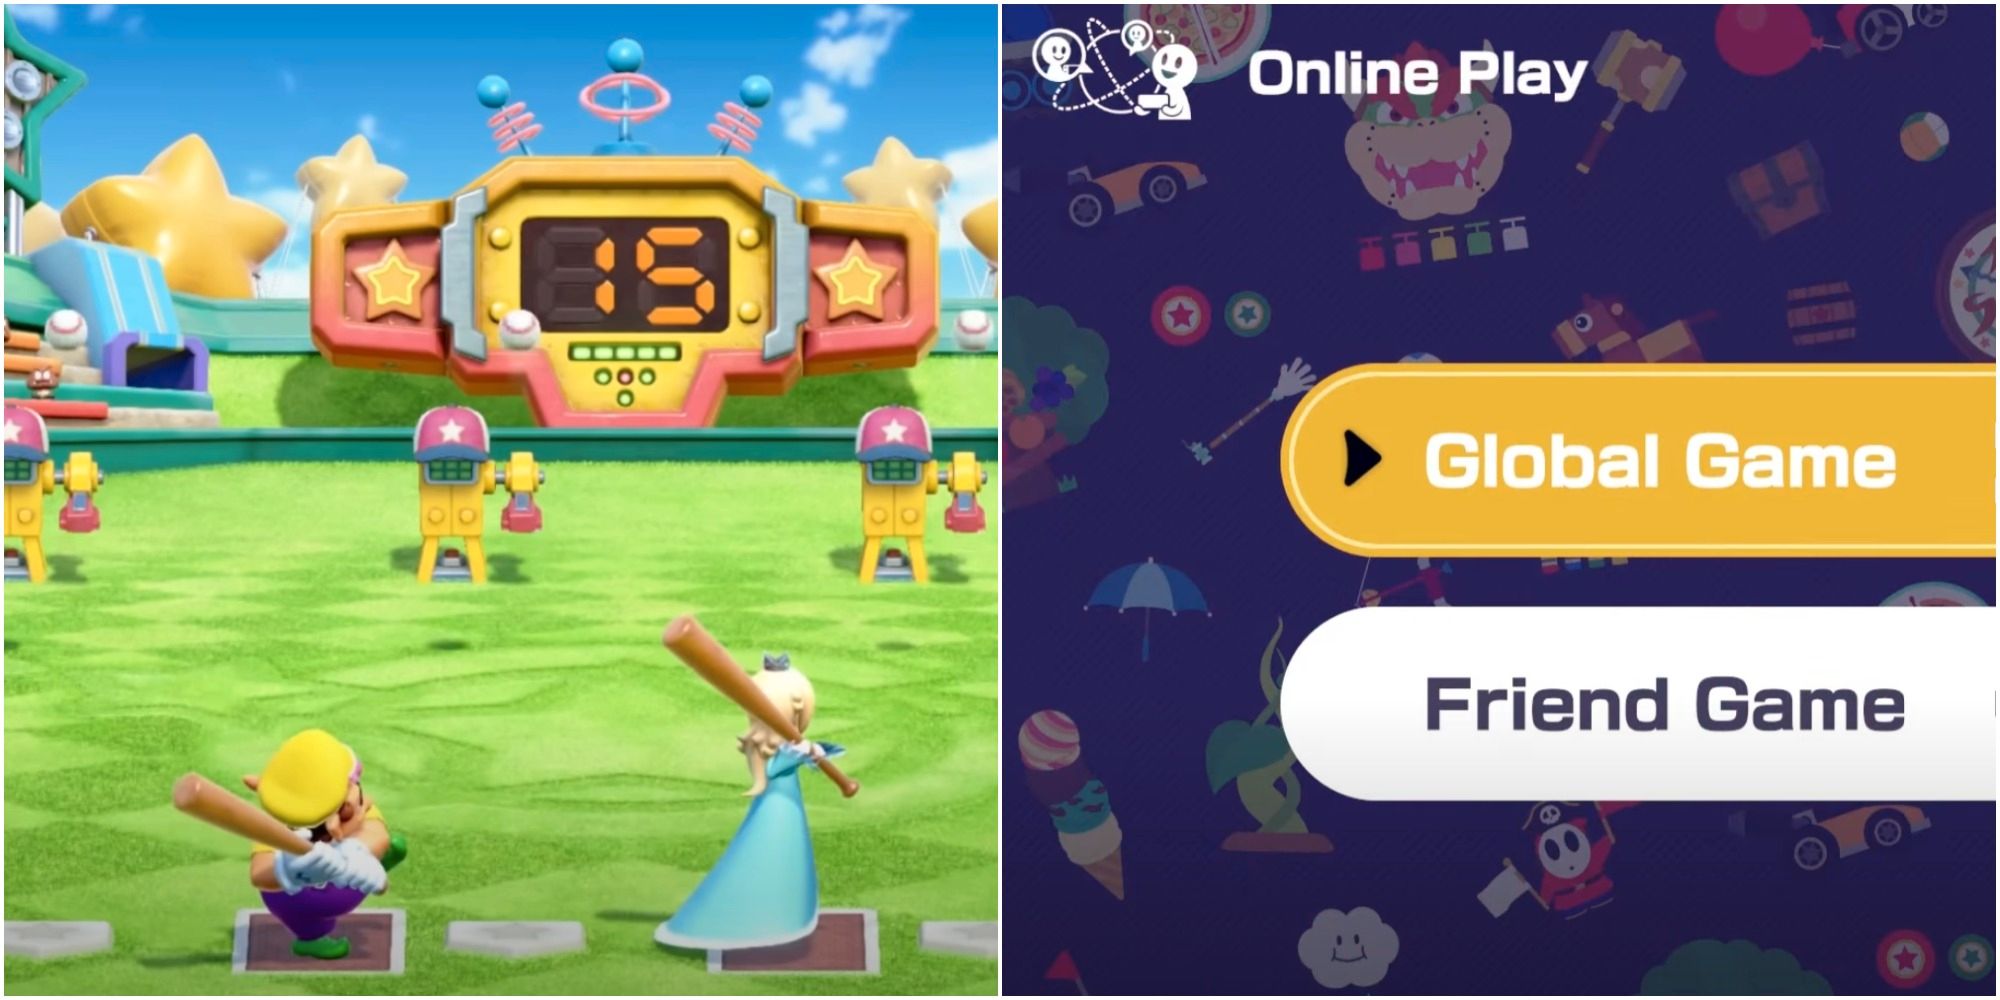 Superestrellas de Mario Party: todo lo que necesitas saber sobre el modo multijugador